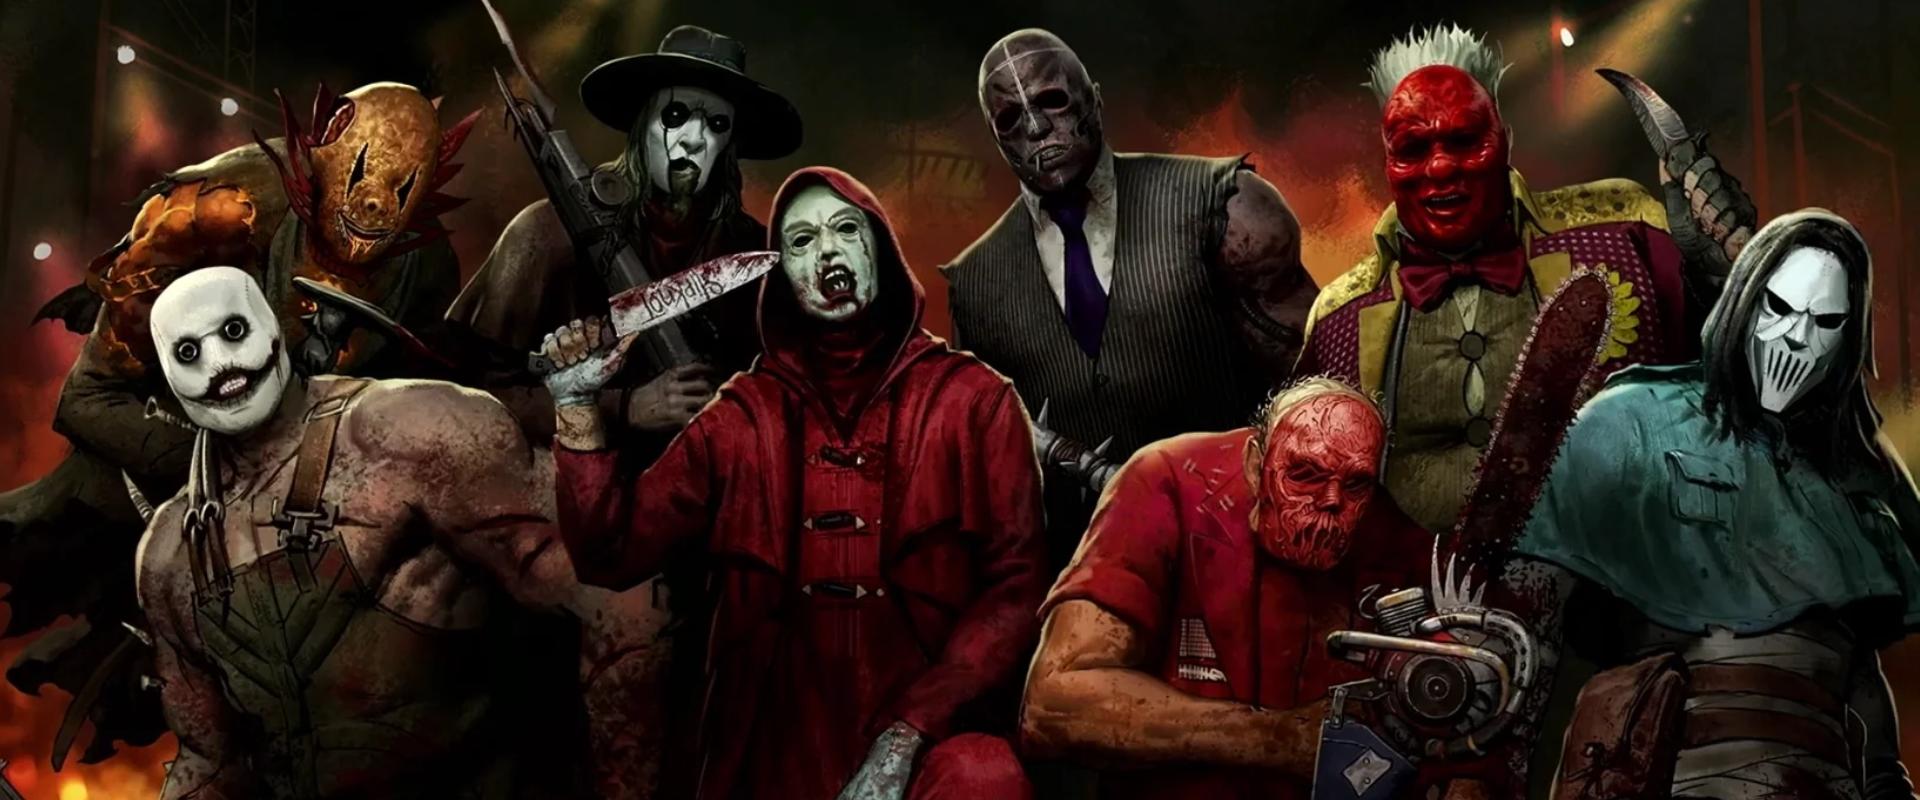 Vérfagyasztó lesz a Slipknot x Dead by Daylight együttműködés